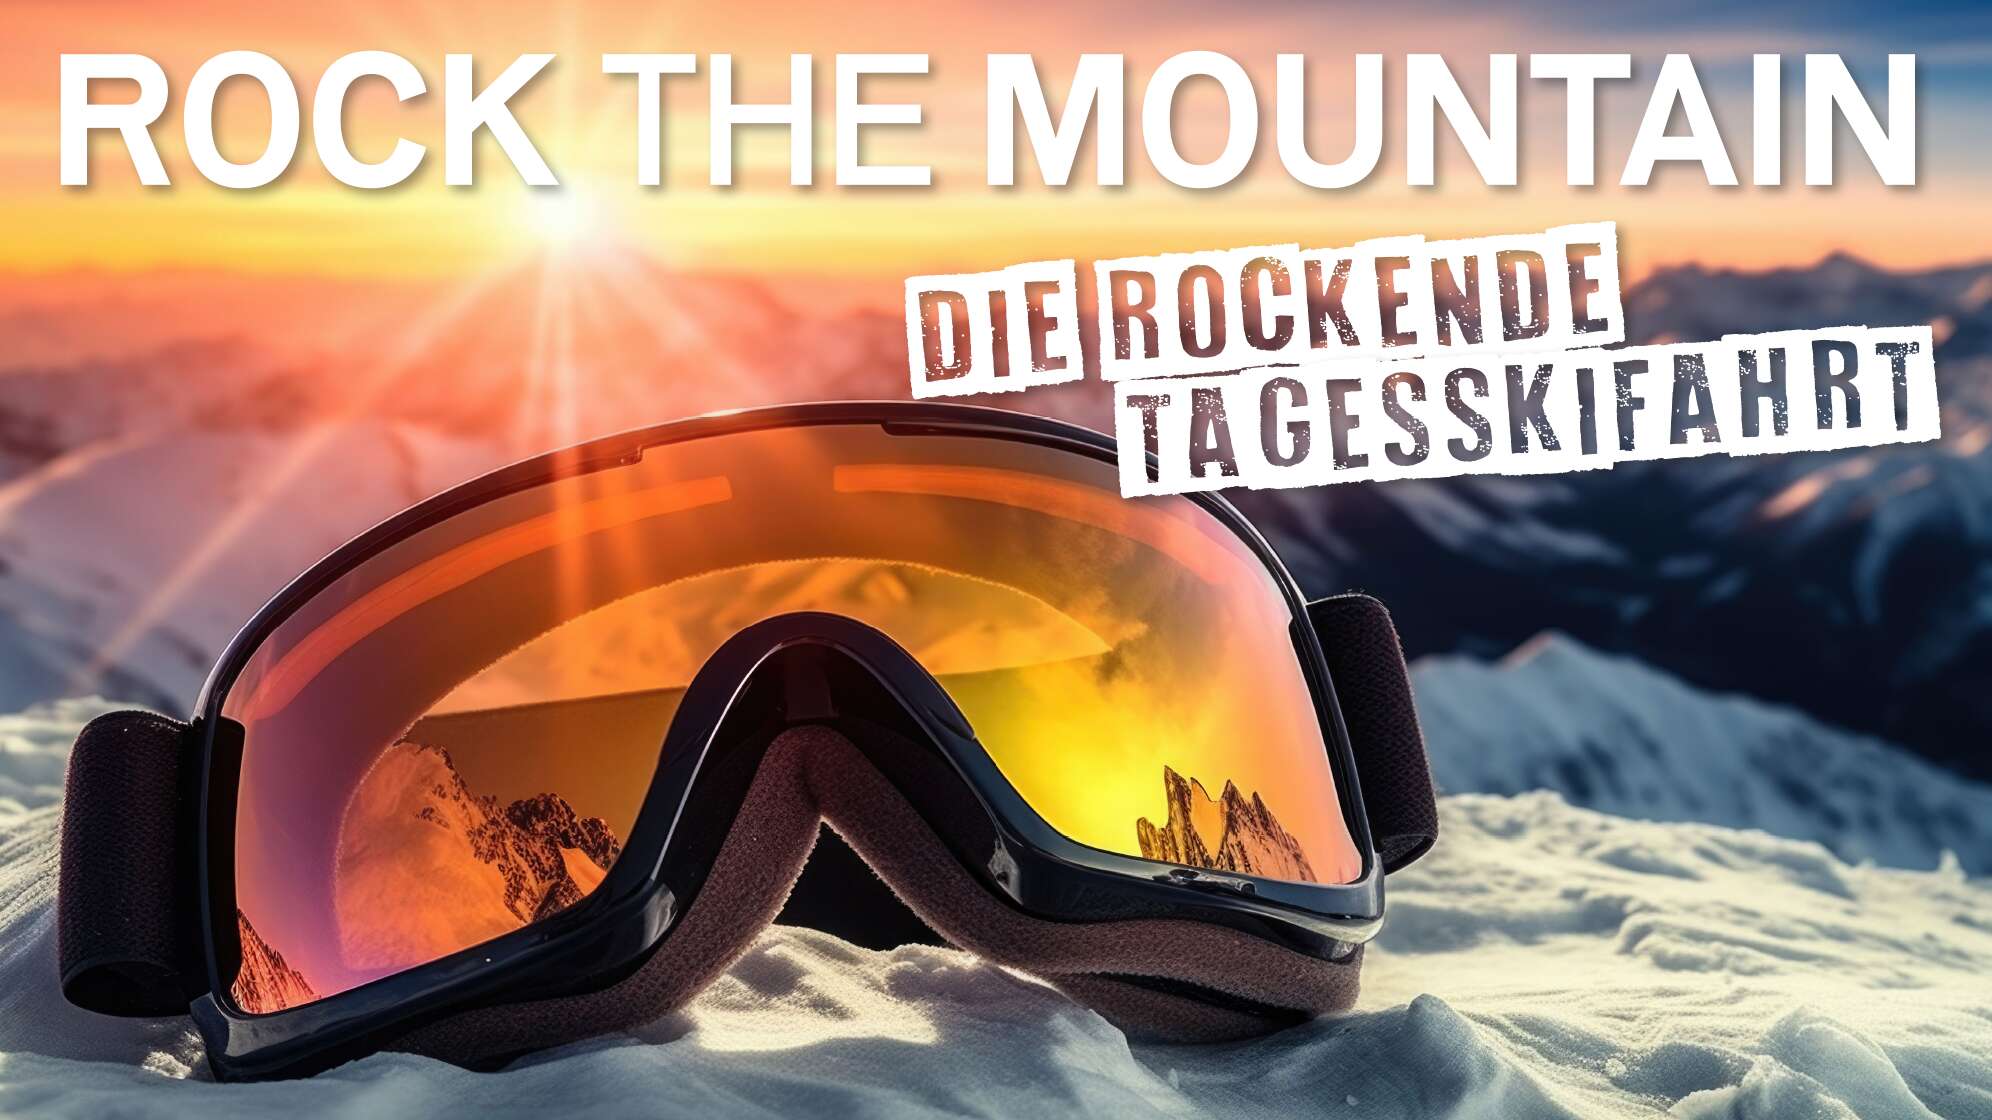 Eine Skibrille, die im Schnee liegt, im Hintergrund ein Bergpanorama mit schneebedeckten Gipfeln, Text: "ROCK THE MOUNTAIN - die rockende Tagesskifahrt"